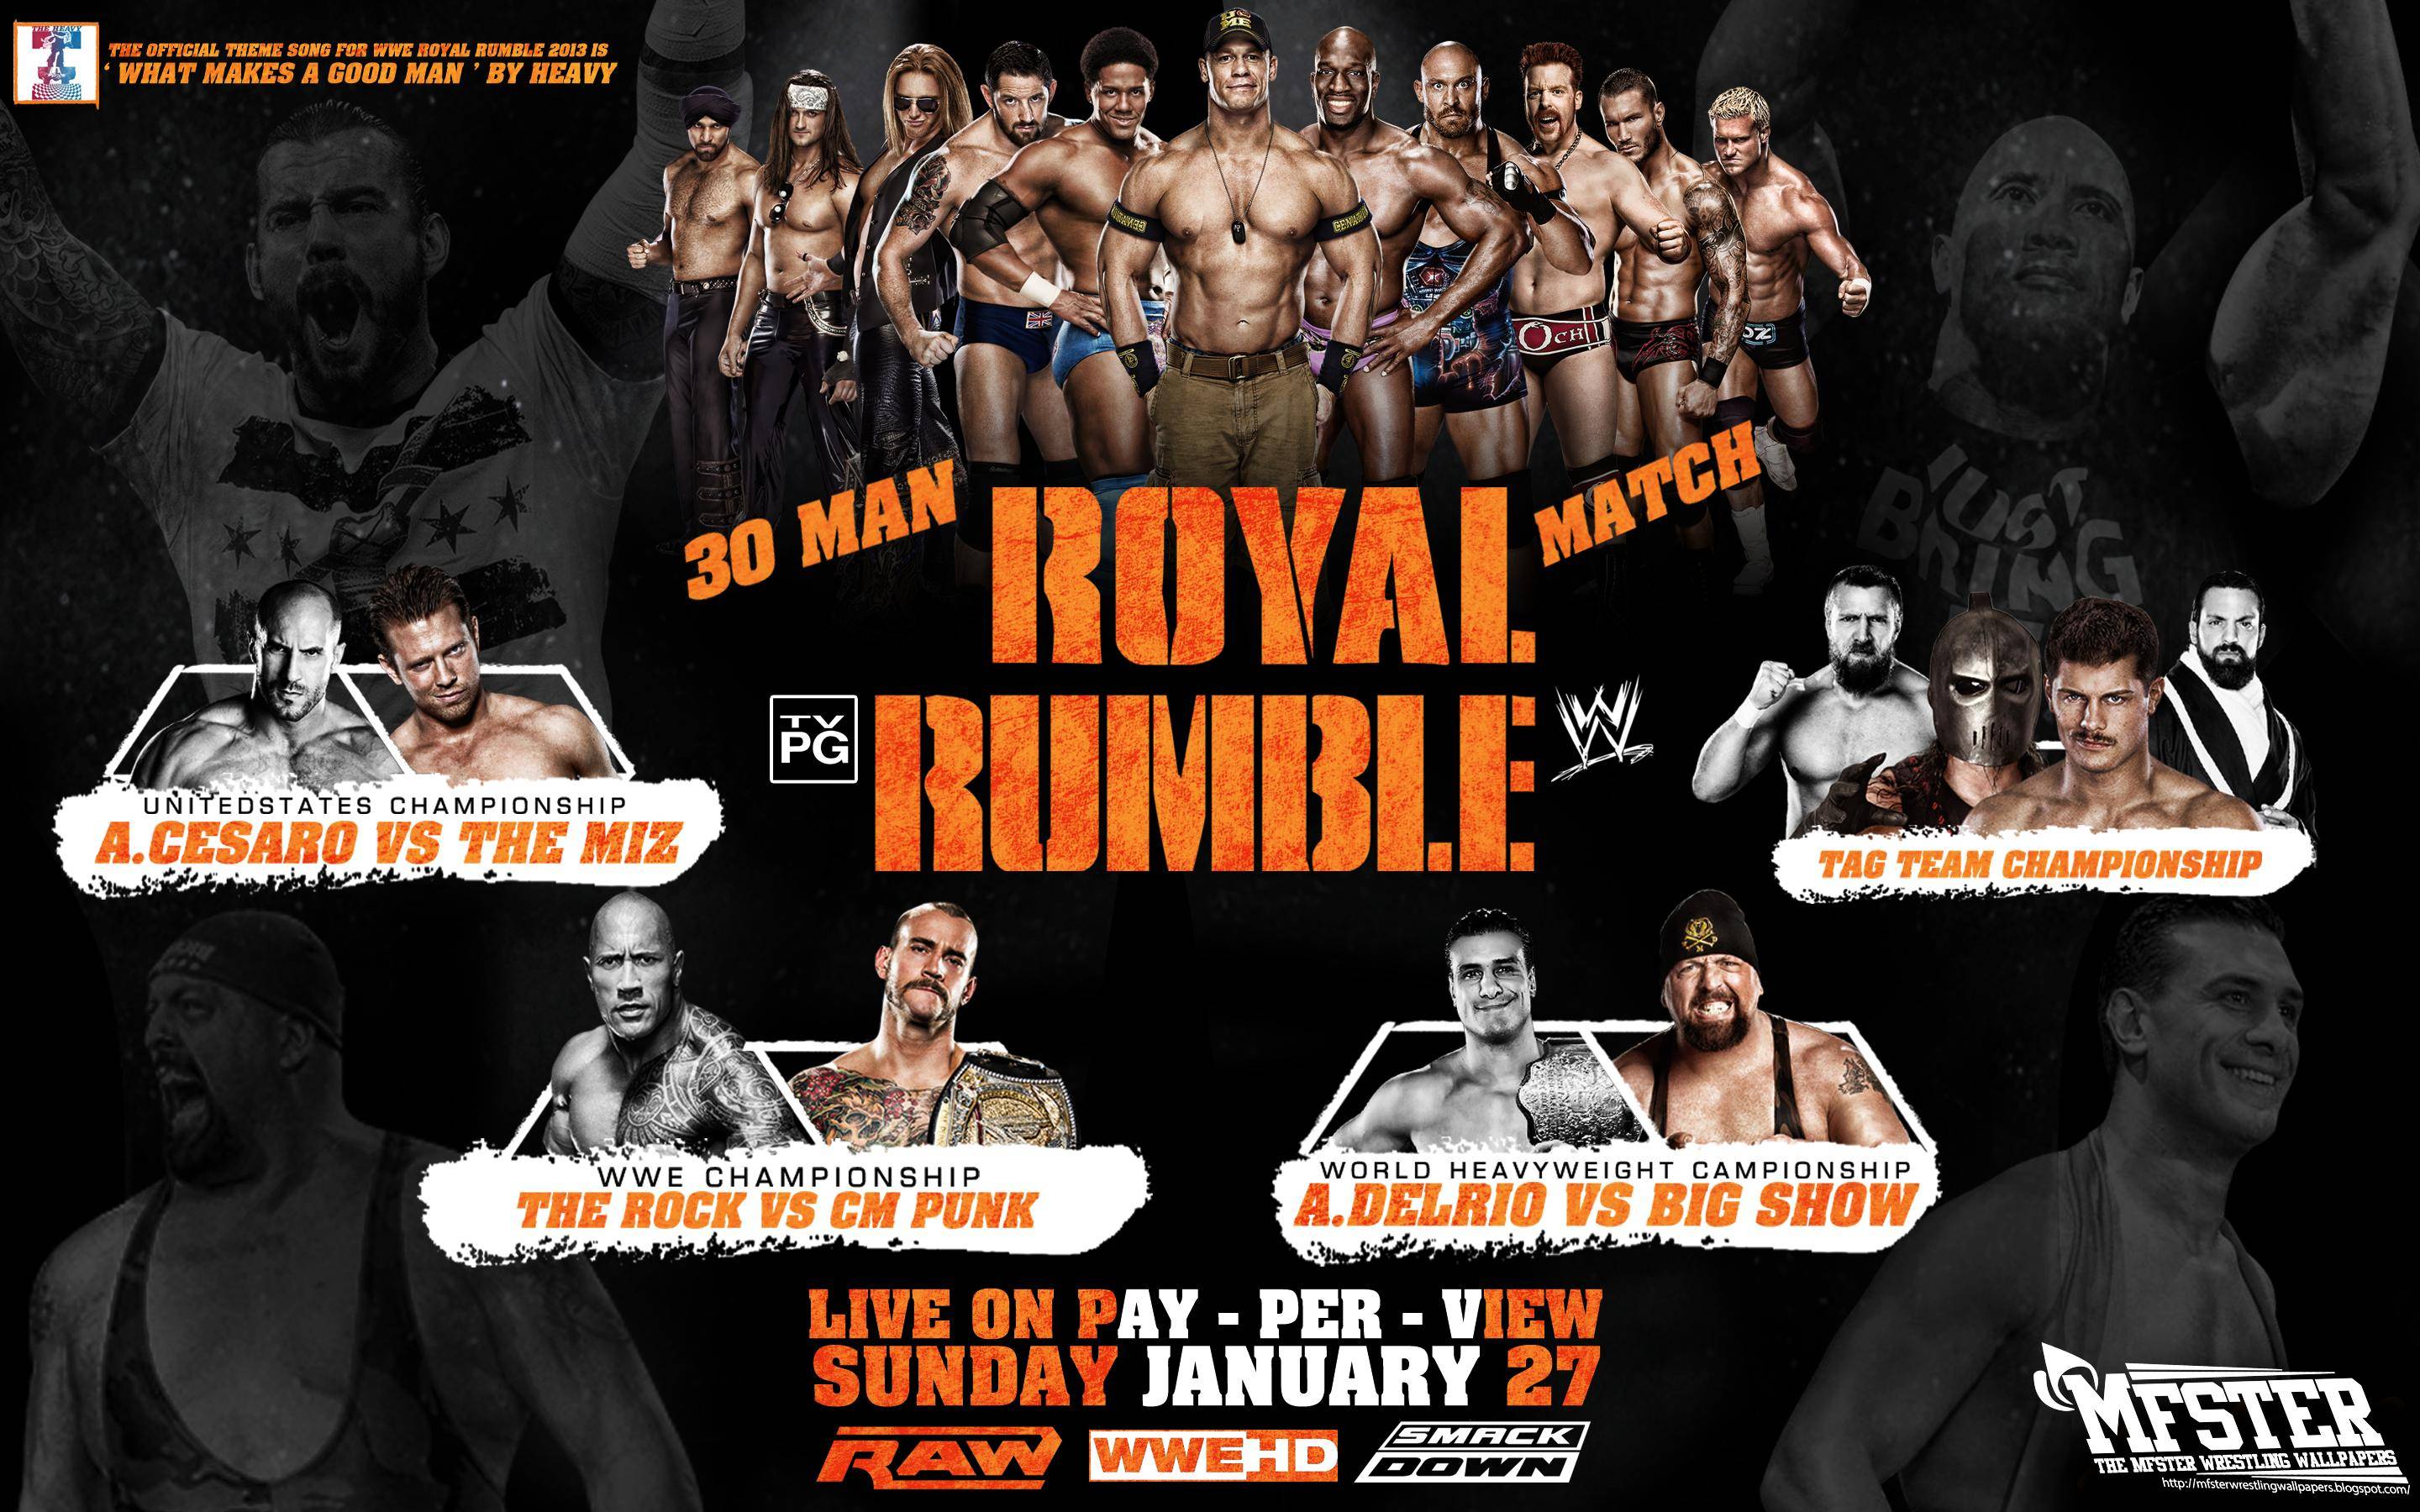 MFSTER Wrestling Wallpaper: WWE Royal Rumble 2013 Wallpaper !